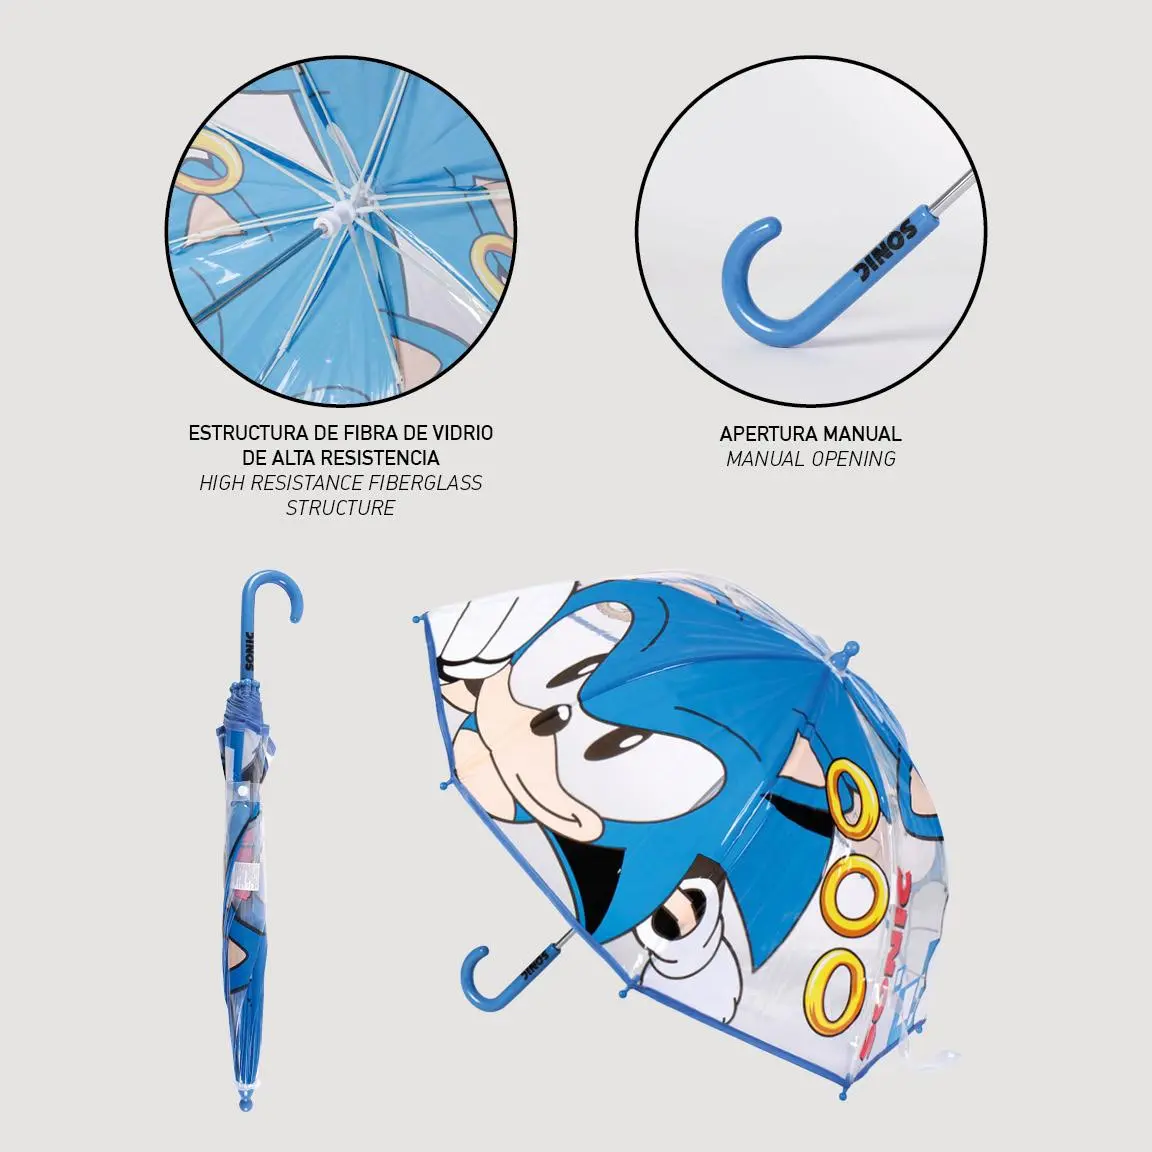 Sonic Regenschirm termékfotó